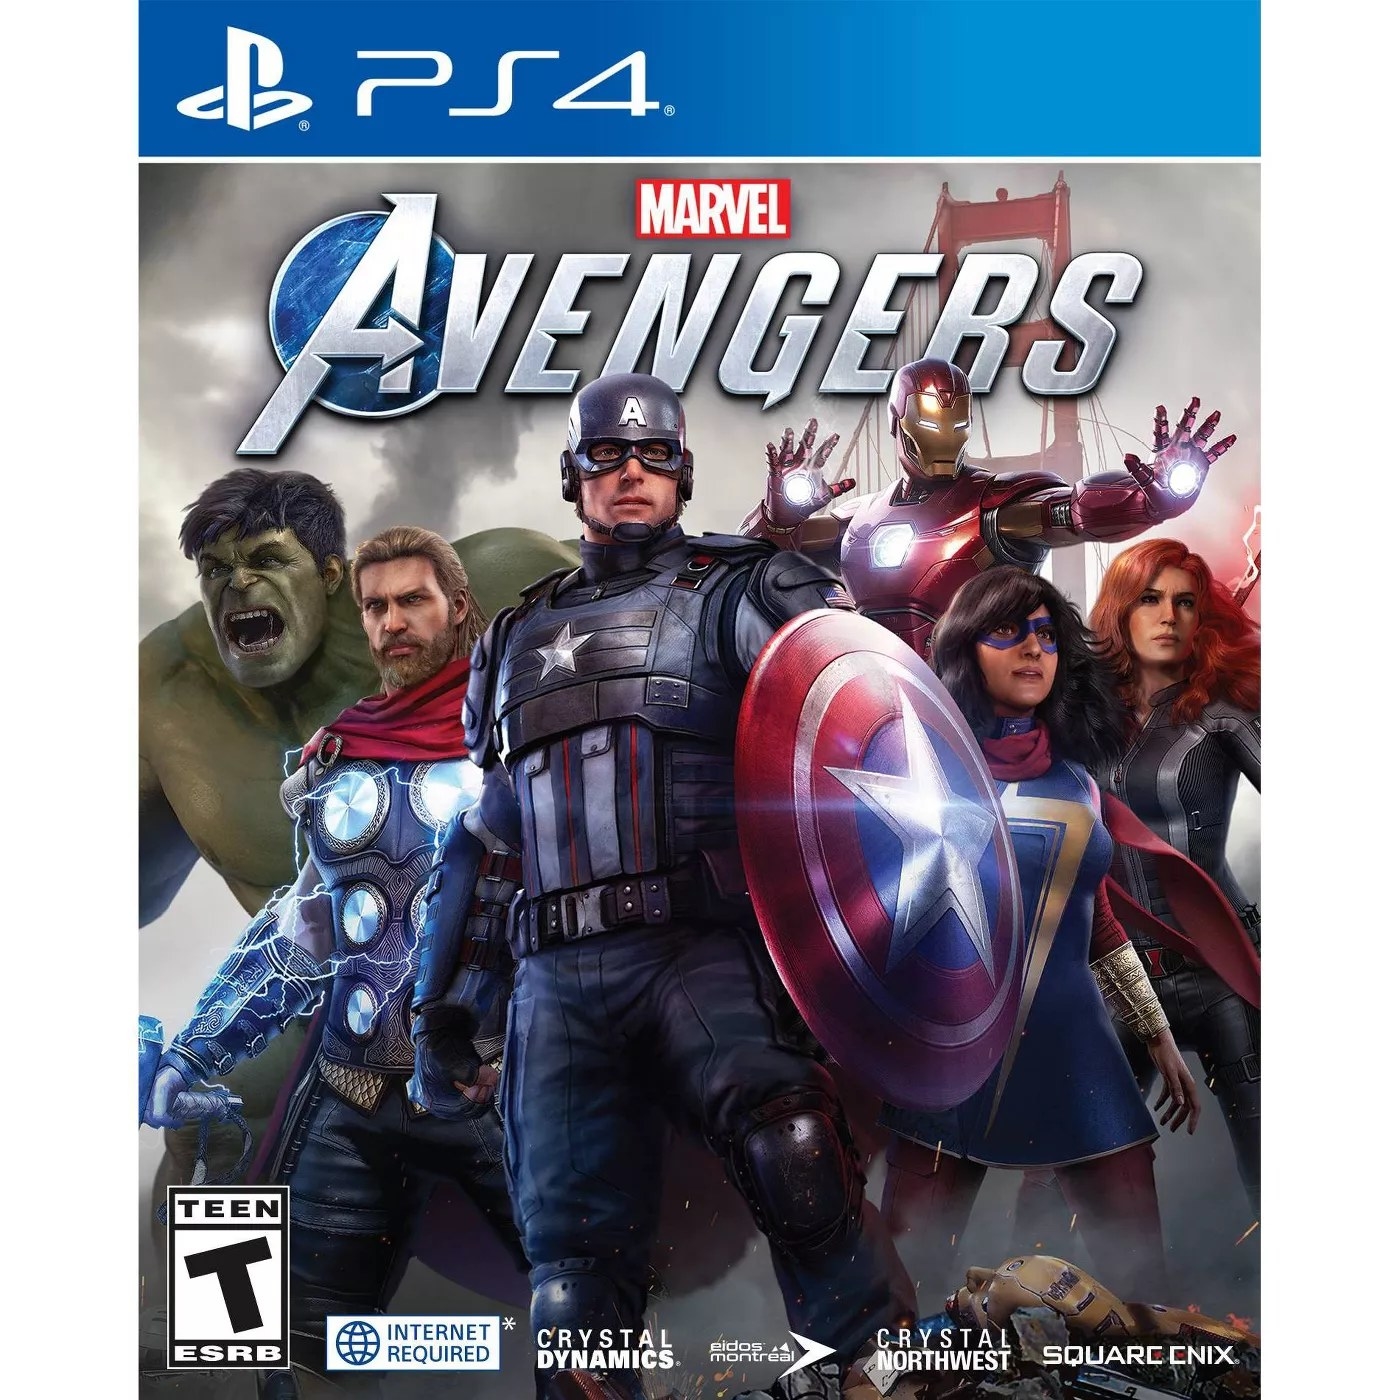 Marvel Avengers PS4 game